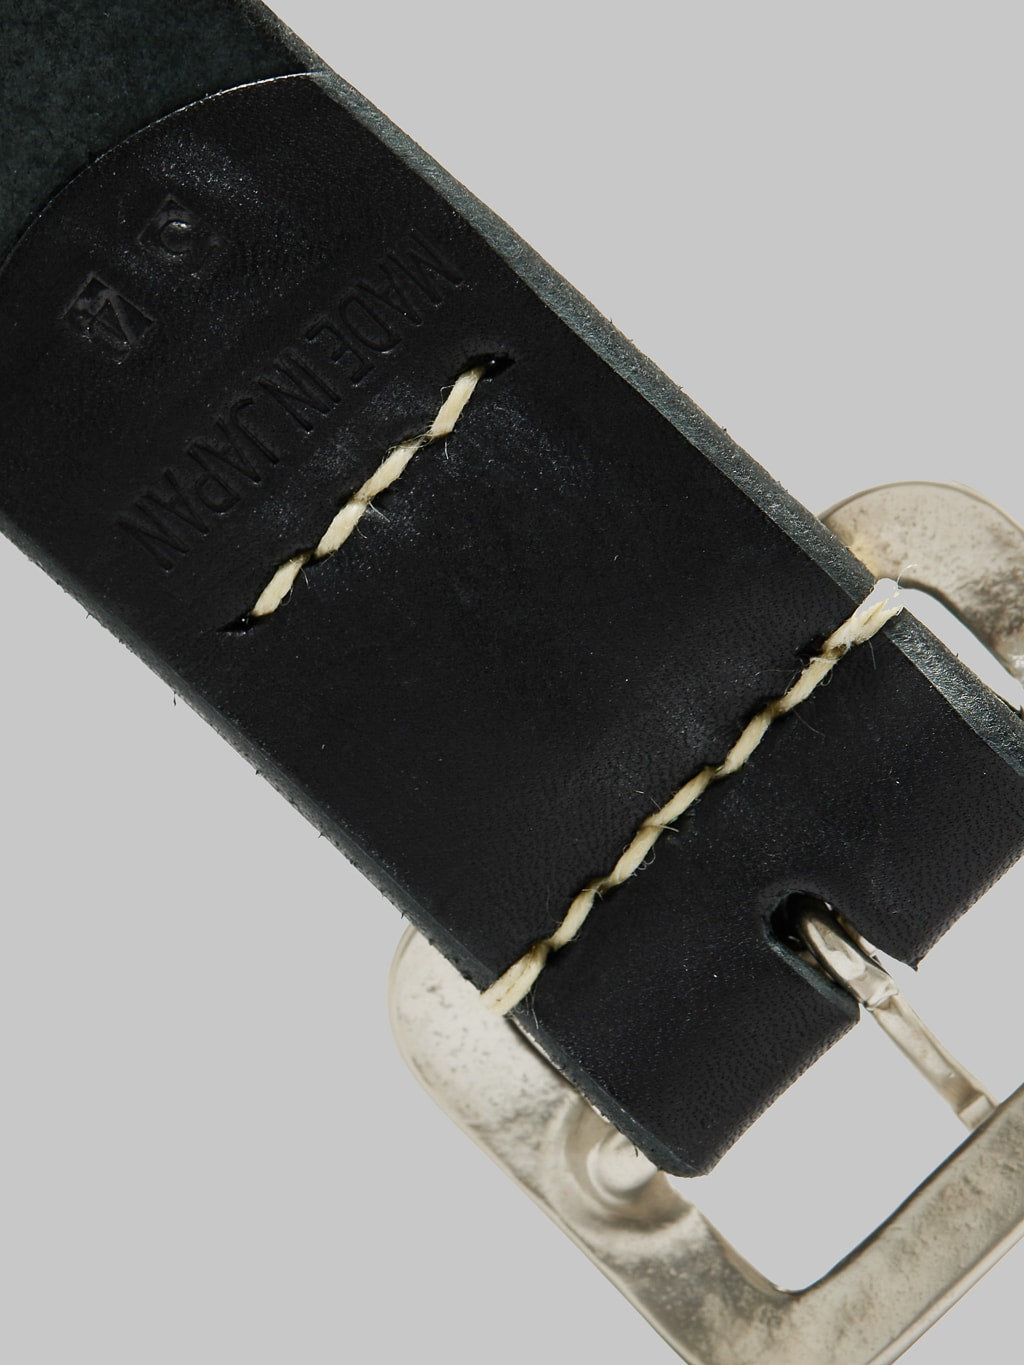 Sugar Cane leather garrison belt black stitching detail